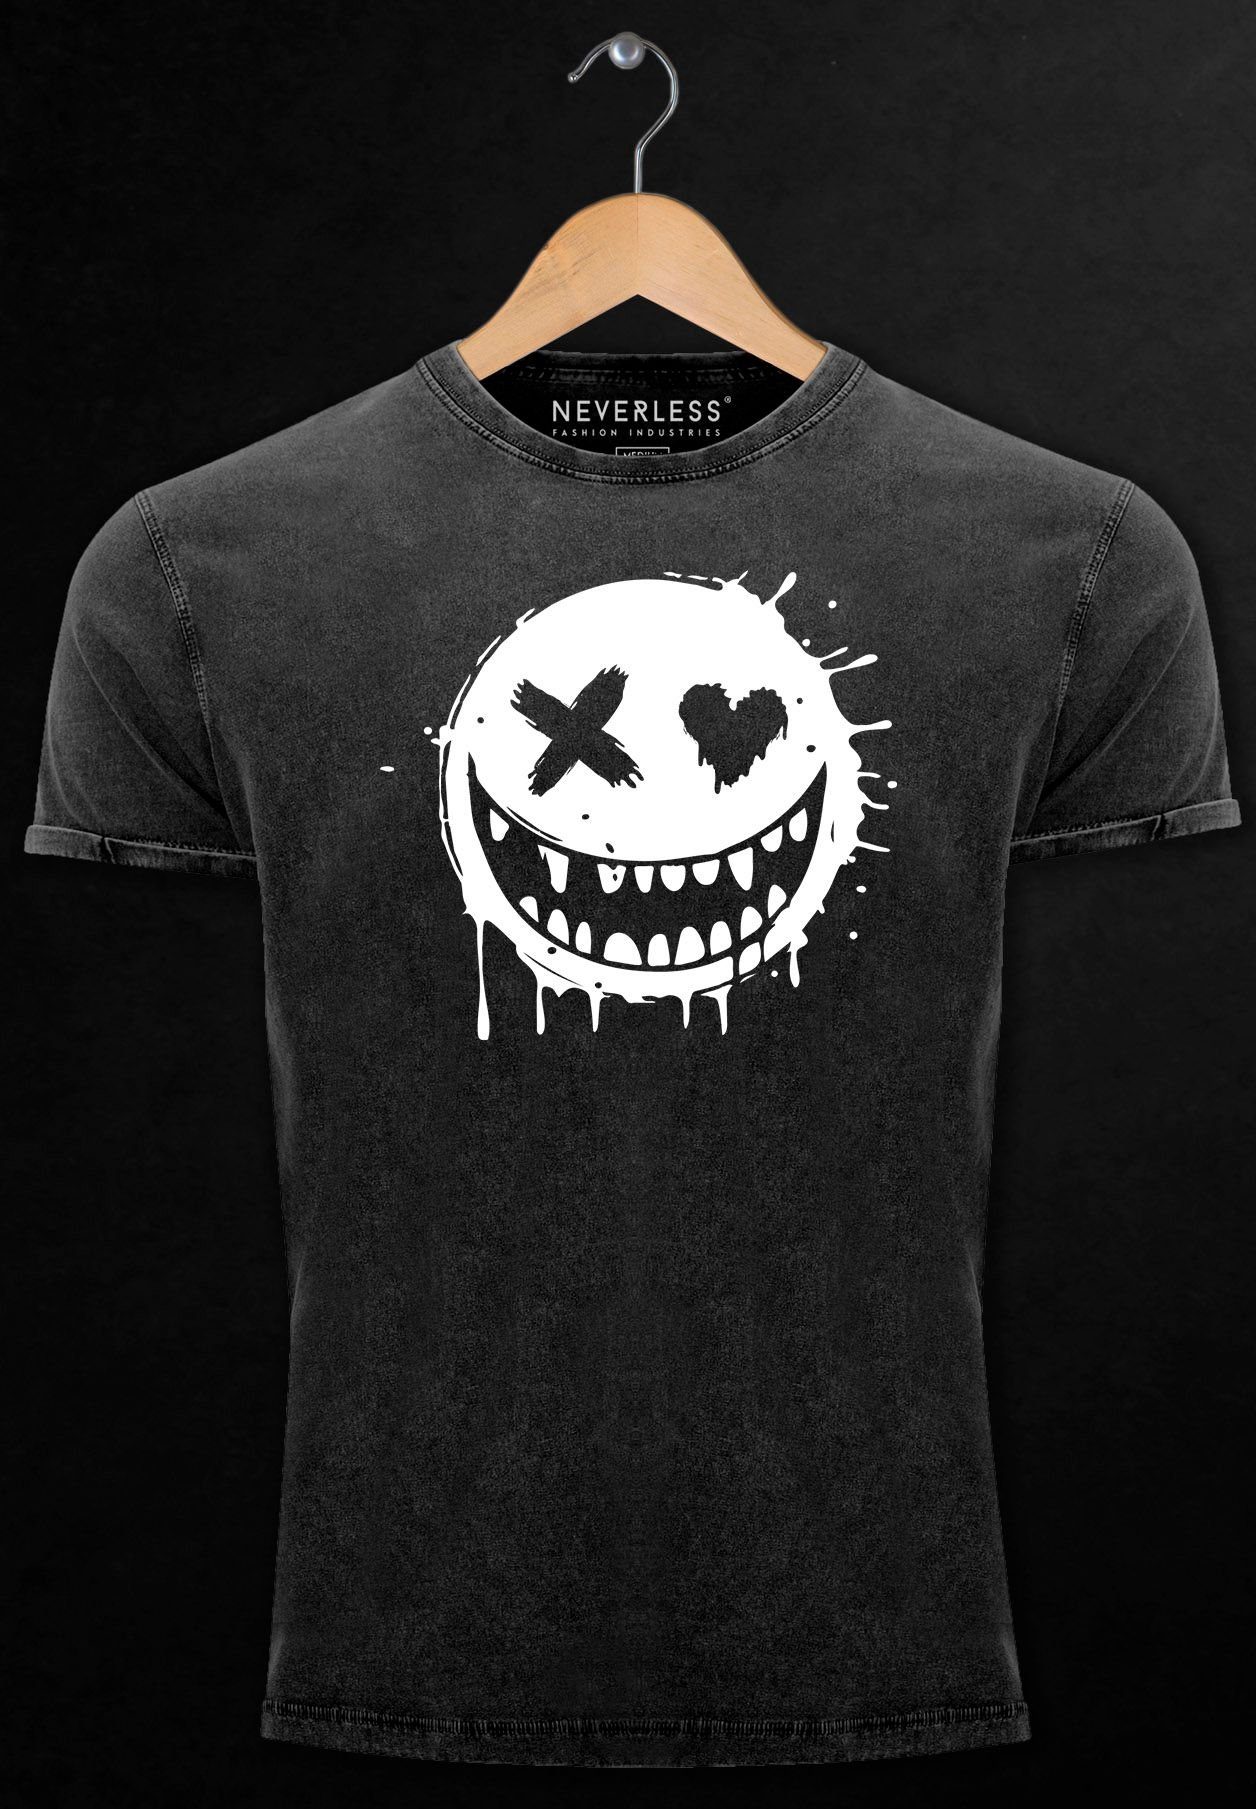 Motiv Print Print-Shirt Neverless Herren Print Face Drip Aufdruck Shirt Vintage Smiling Printshirt mit